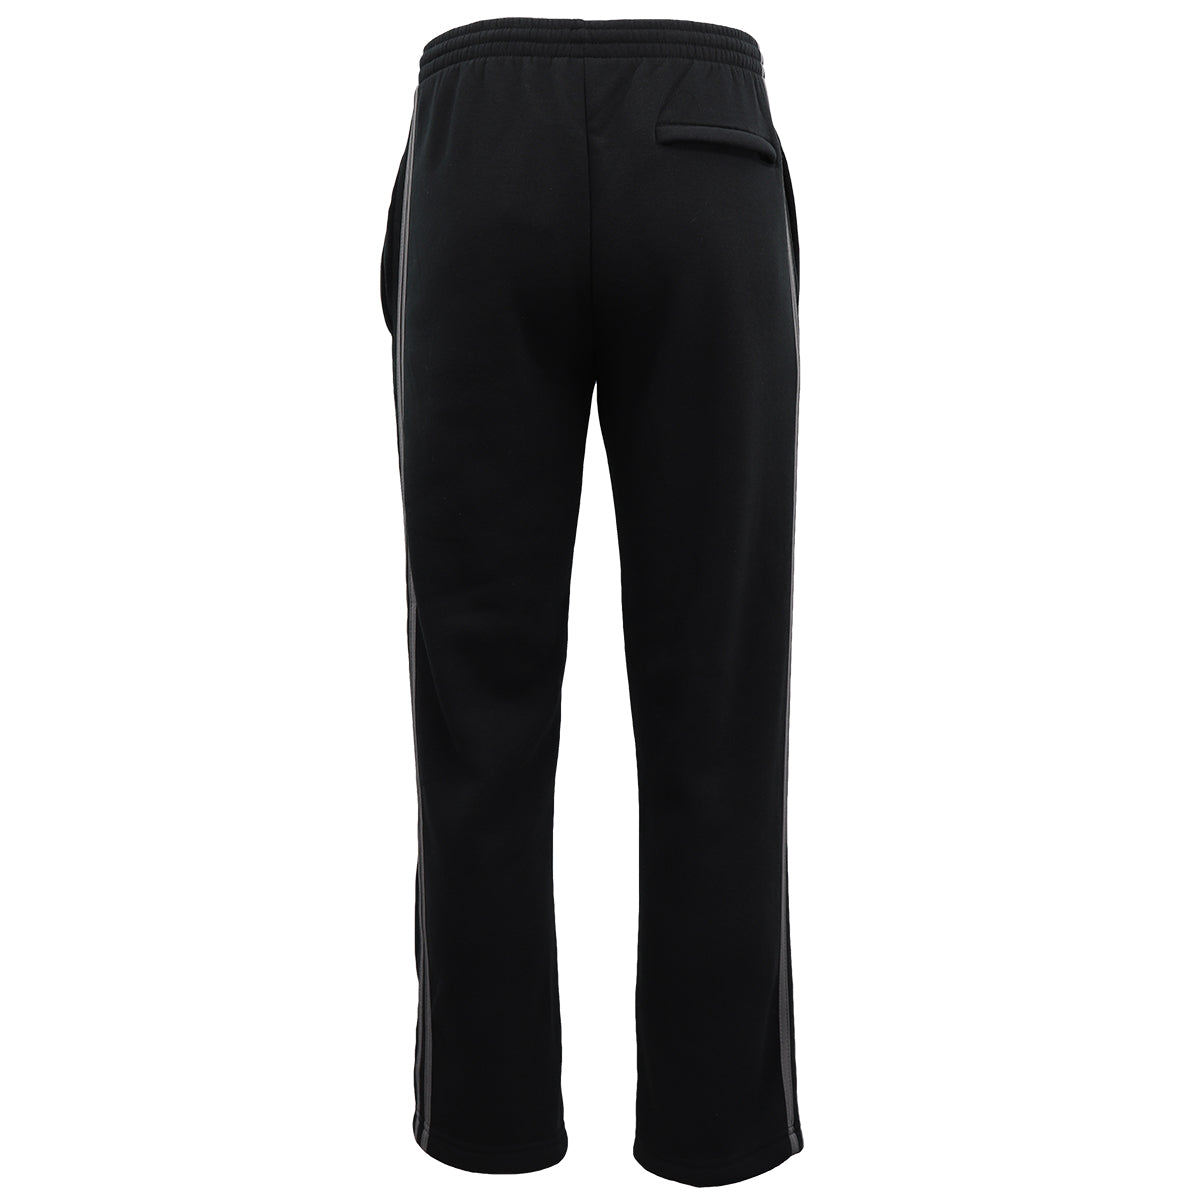 Men's Fleece Casual Sports Track Pants w Zip Pocket Striped Sweat Trousers S-6XL, Navy, 4XL